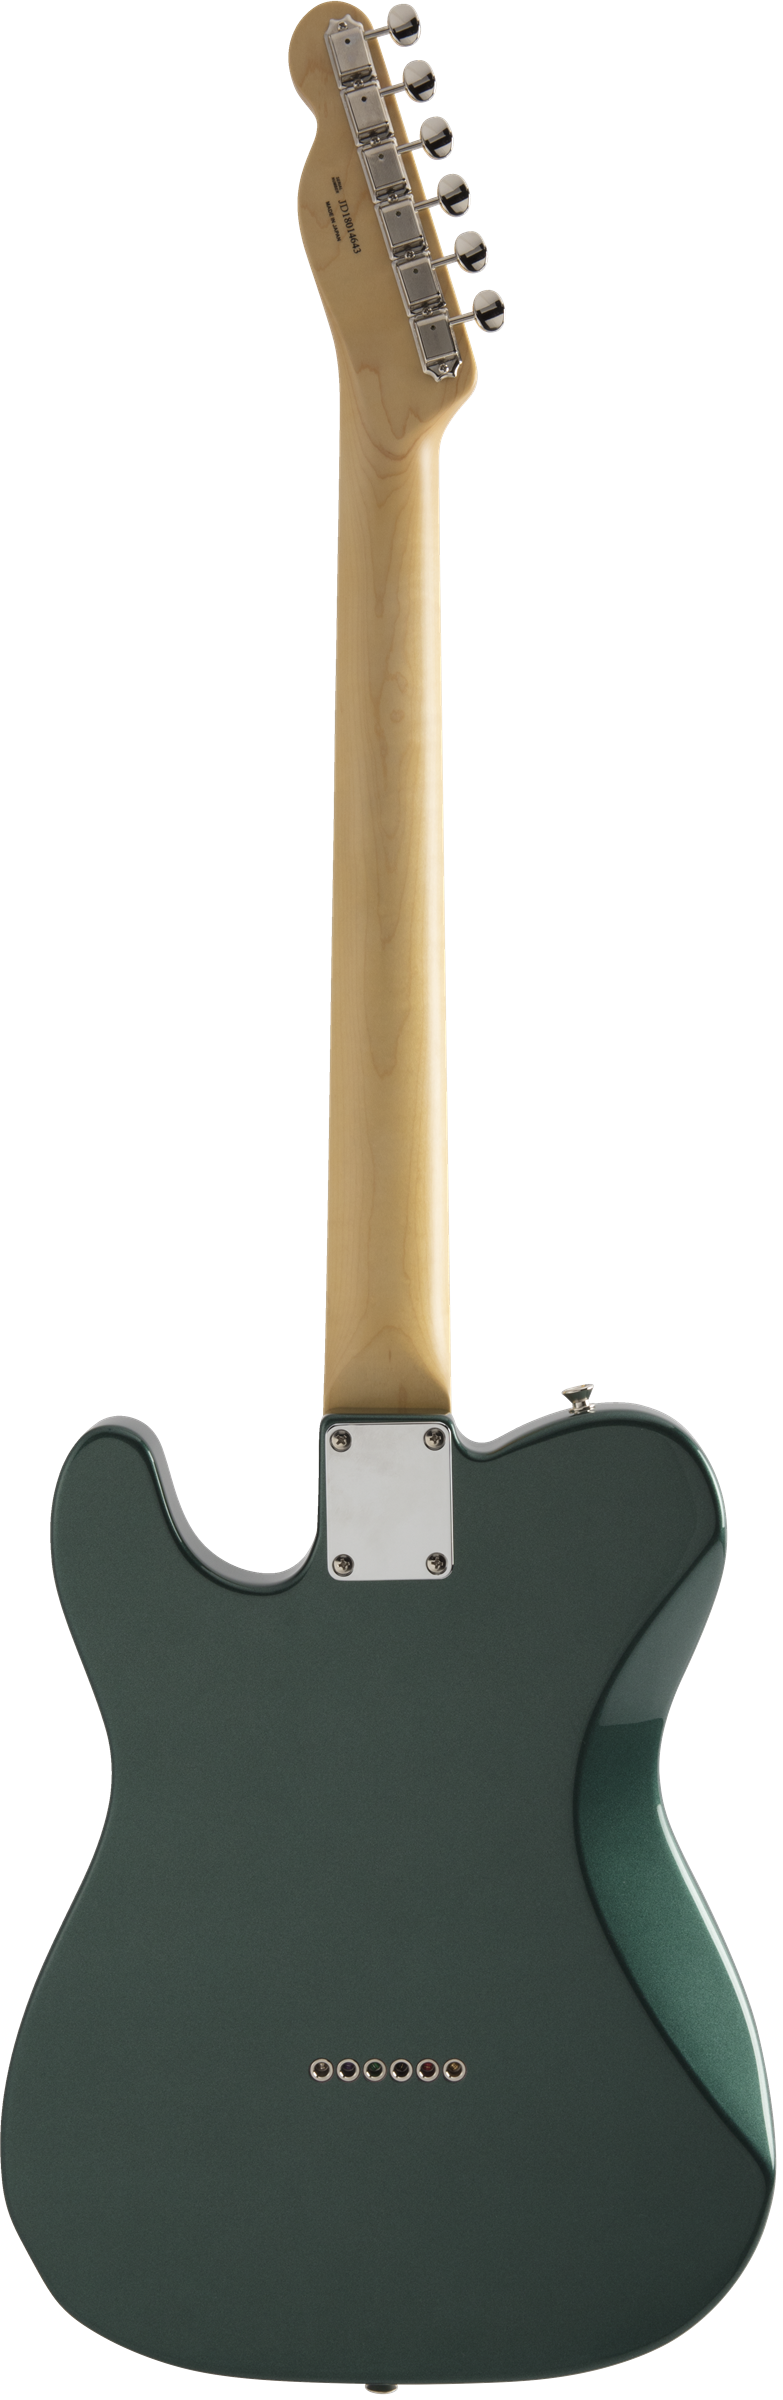 Fender Made In Japan Hybrid Telecaster Deluxe - Sherwood Green Metallic